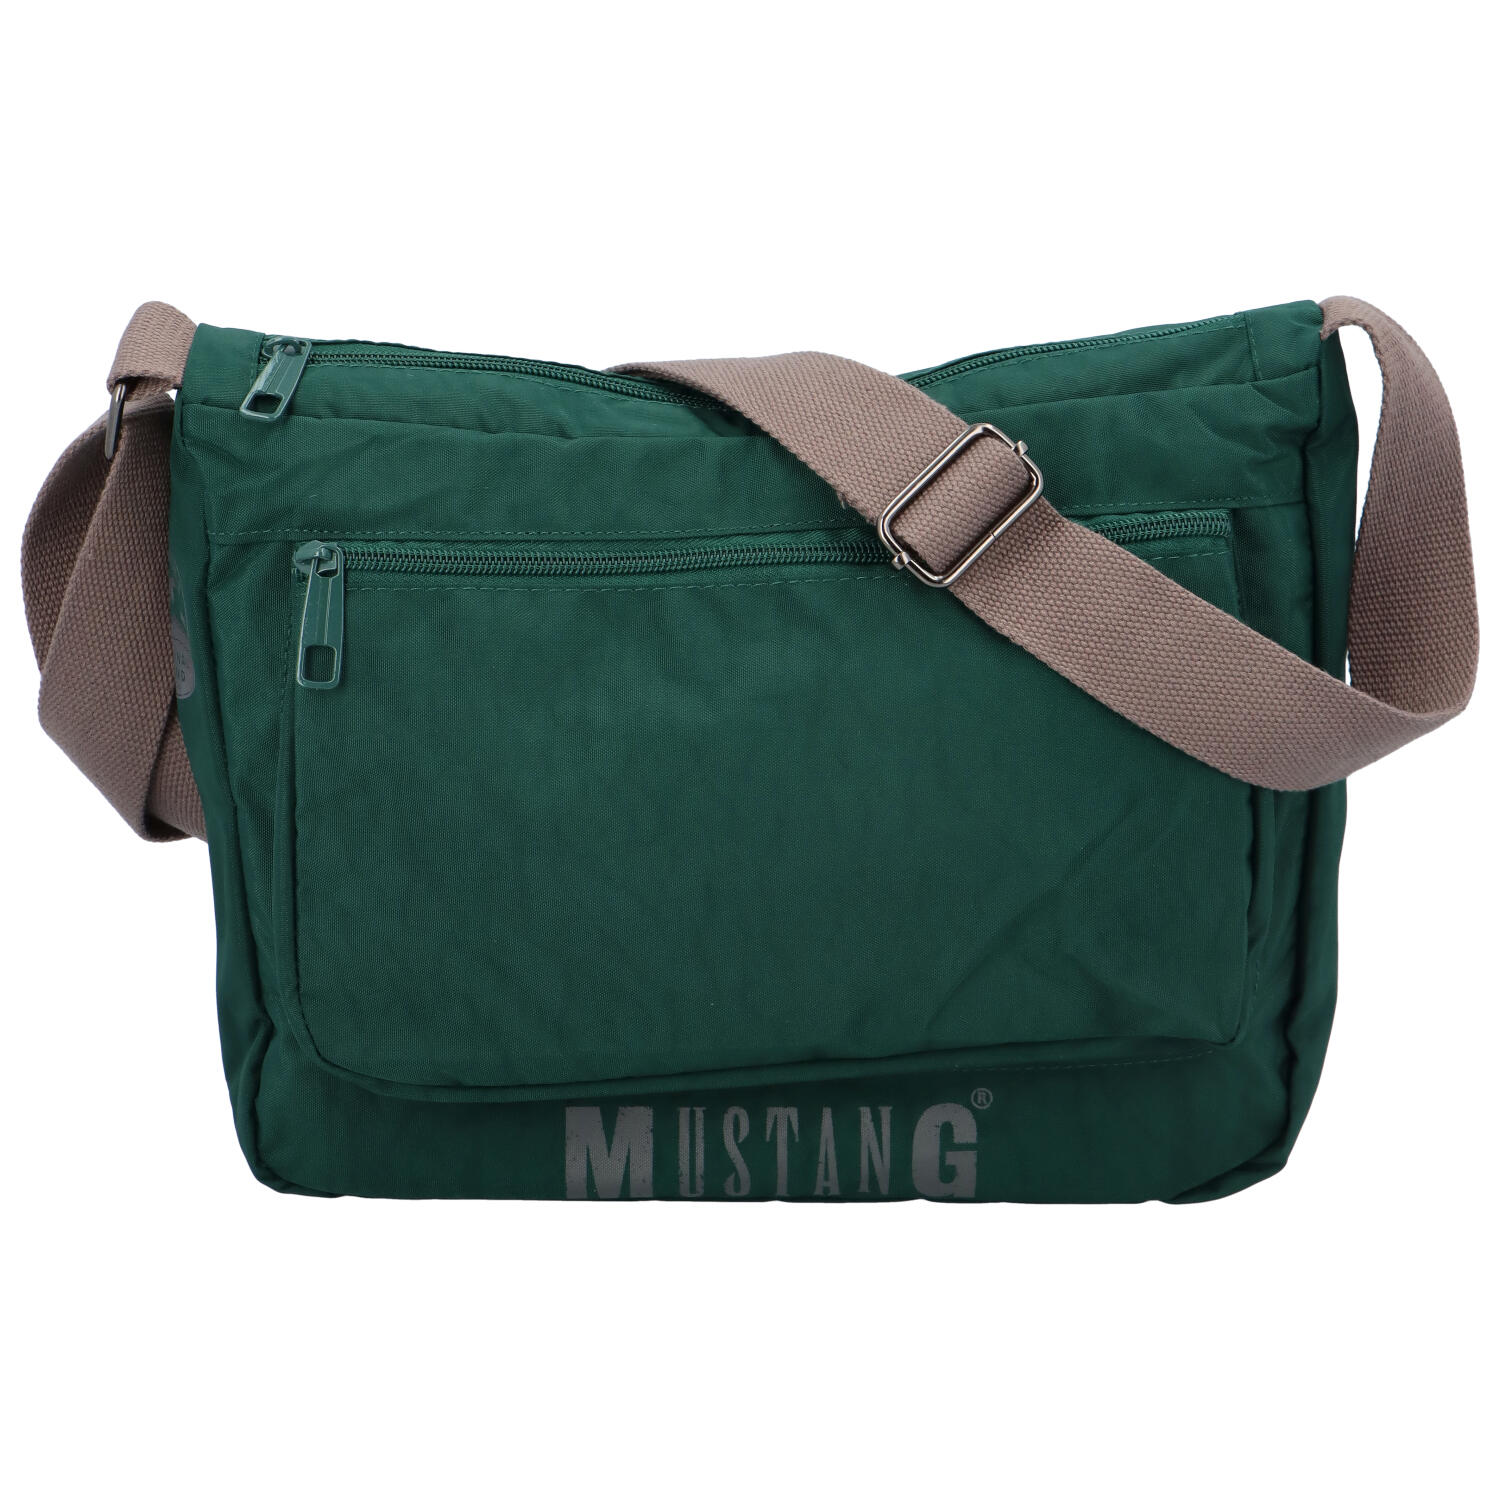 Sportovní taška přes rameno tmavě zelená - Mustang Agelesy